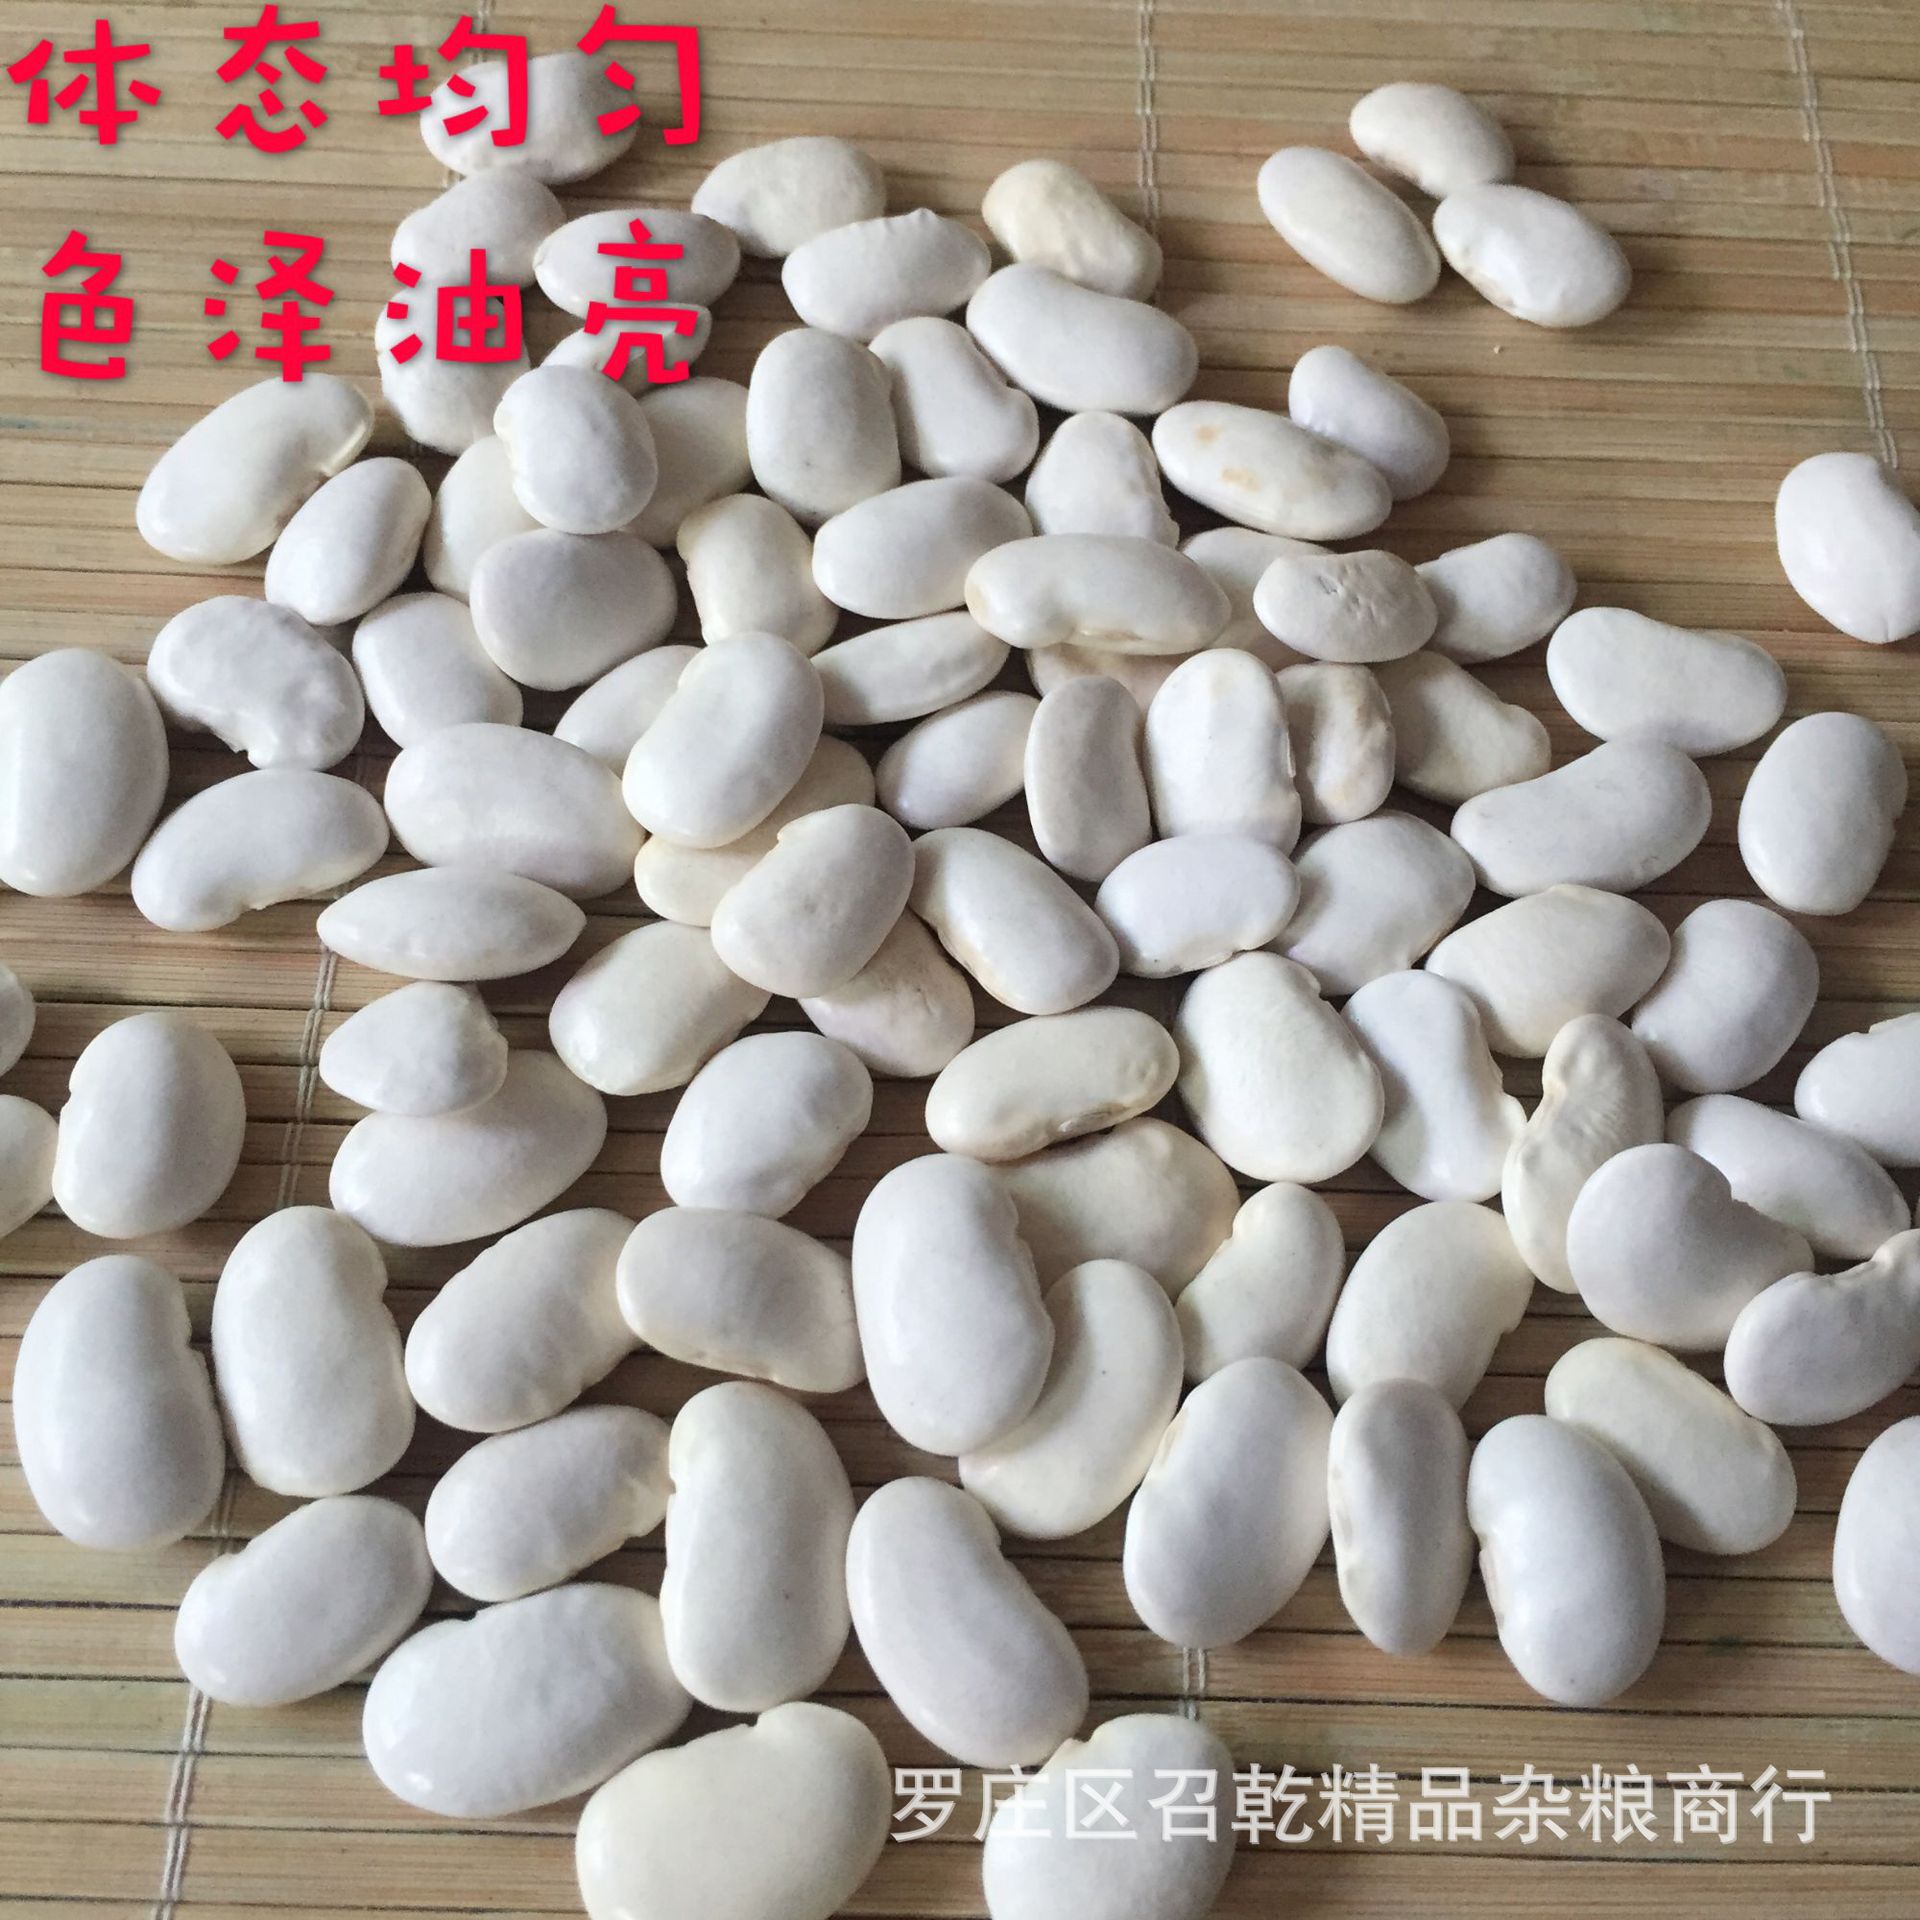 中国-2019-大白芸豆-85粒-HPS | 光明貿易 雑豆情報